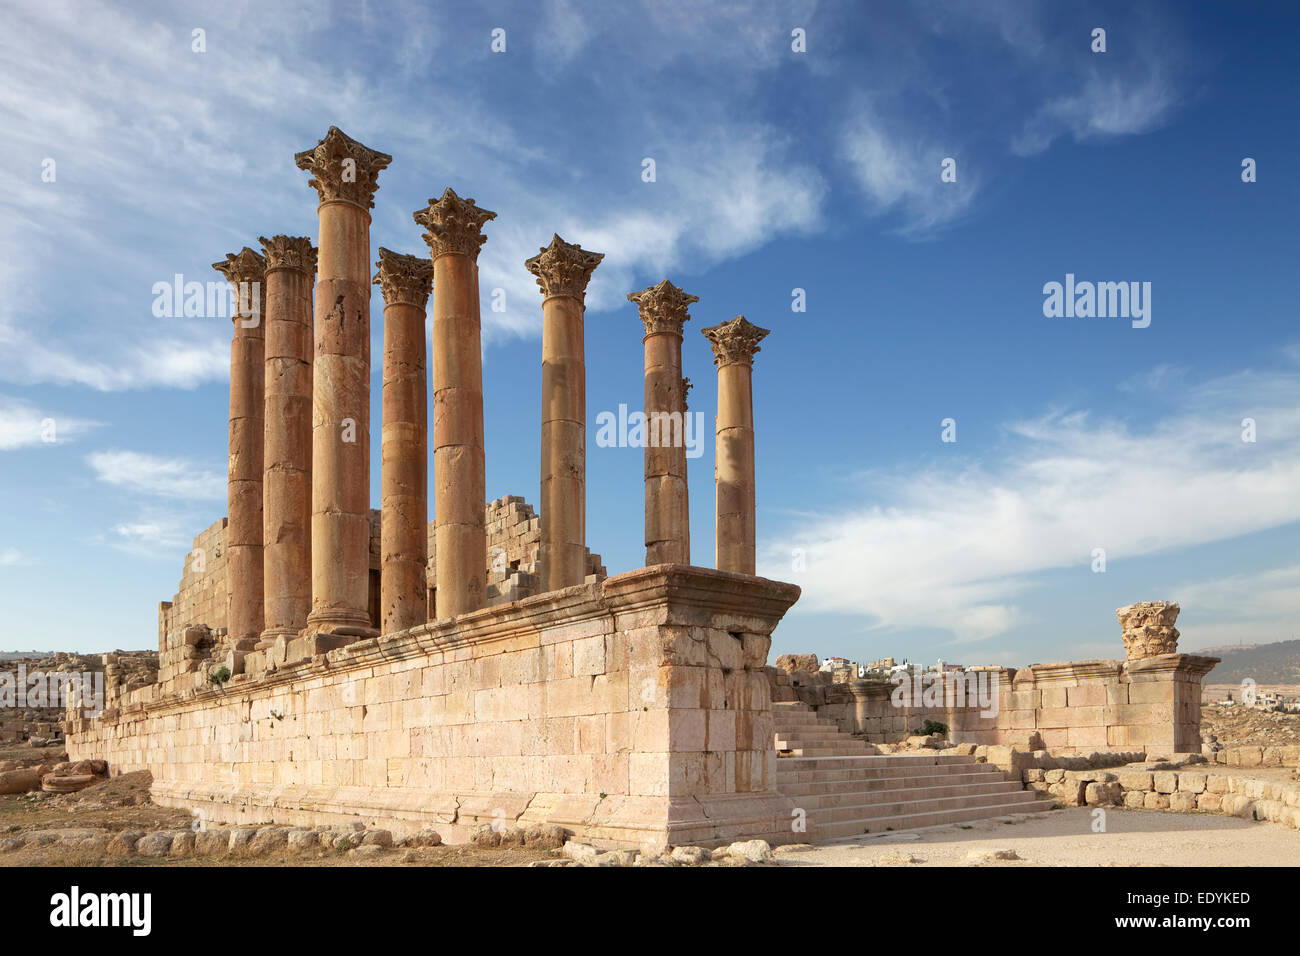 Columnas, Templo de Artemisa, construido en el siglo II d.C., la antigua ciudad romana de Jerash, parte de la Decápolis, Jerash Foto de stock